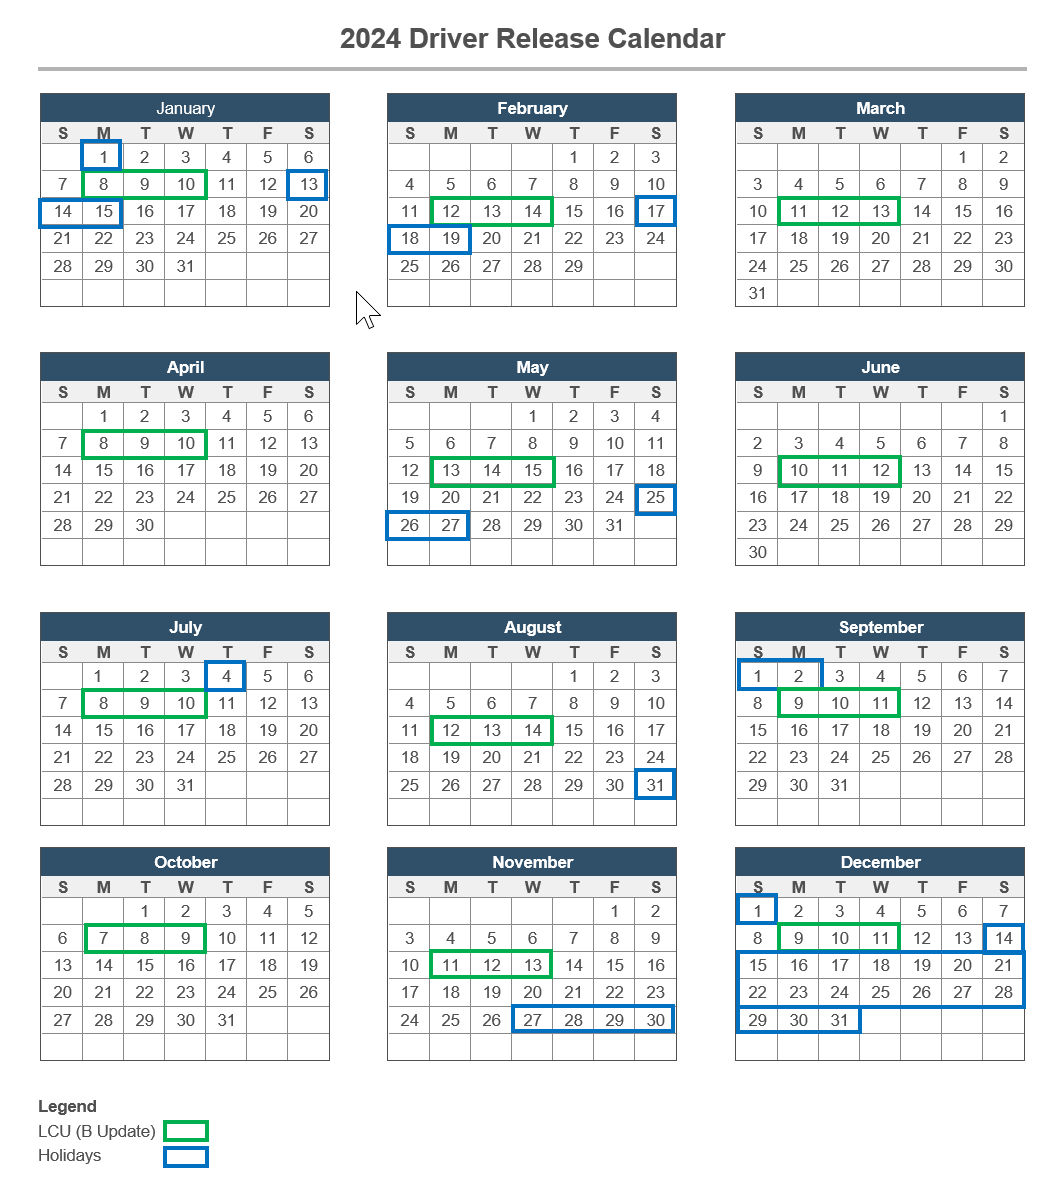 Sept - Dec 2024 Driver Release Calendar mit ausgeschlossenen Datumsangaben wie oben beschrieben.